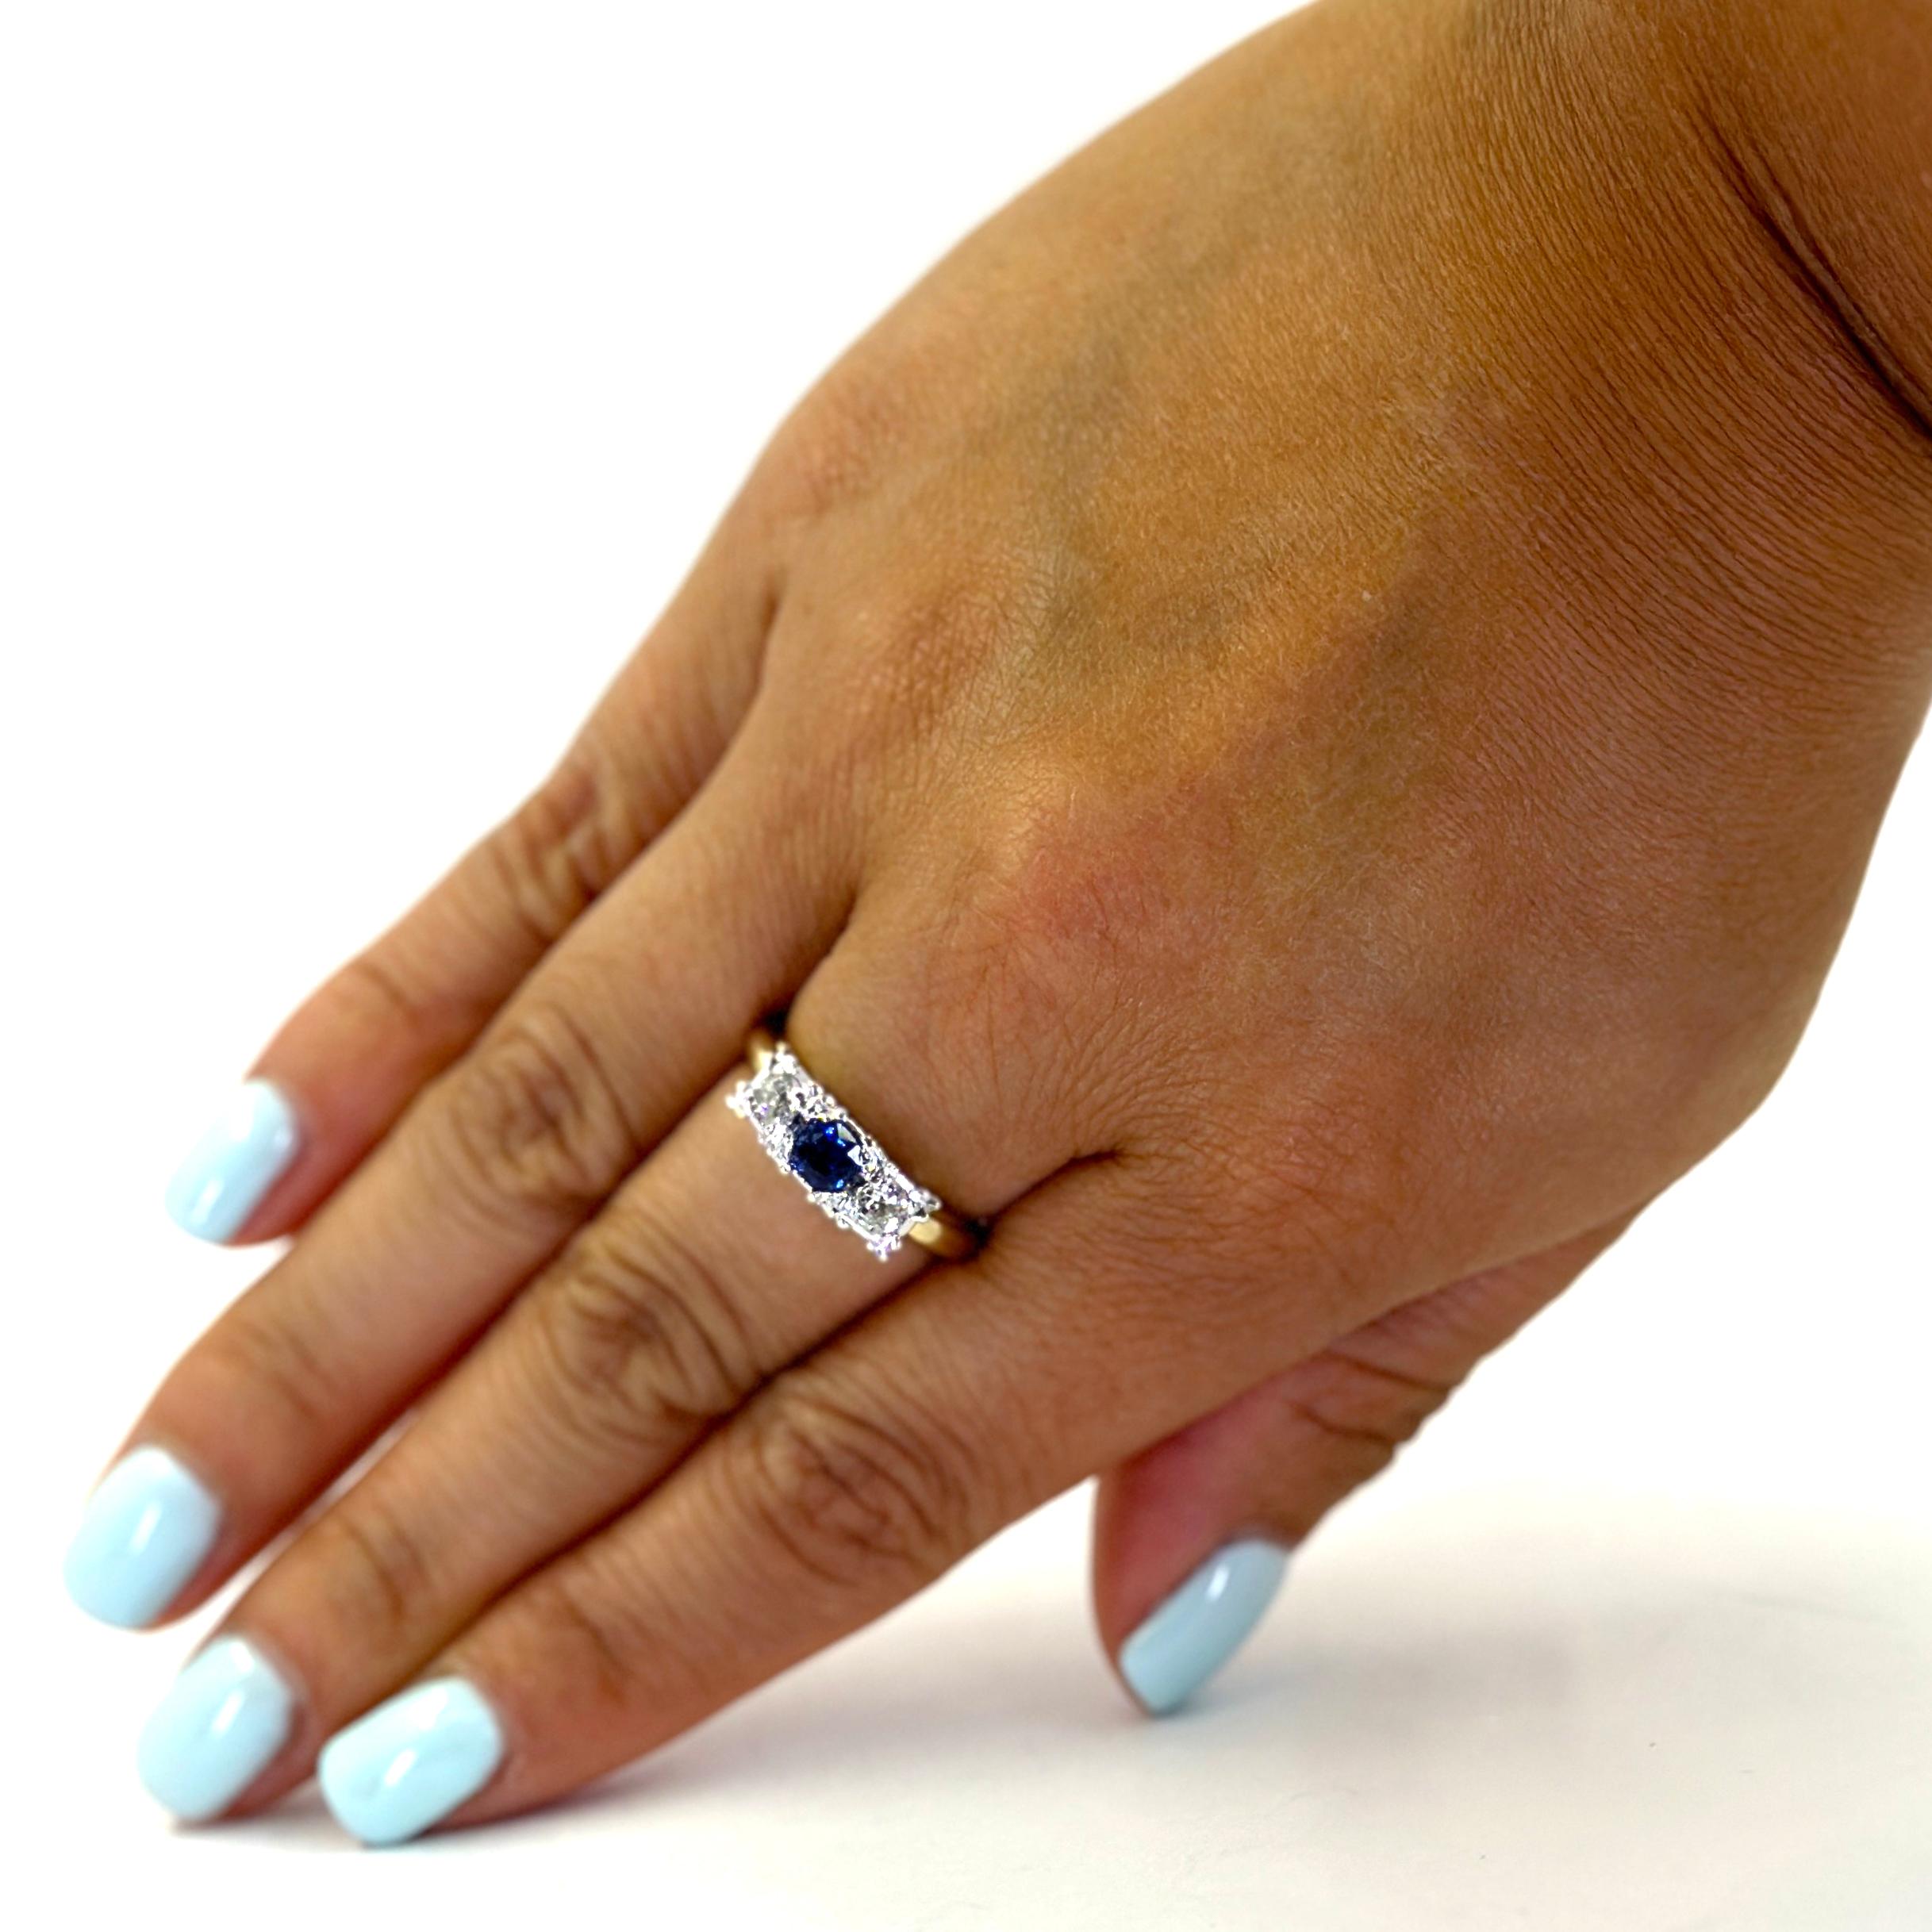 14 Karat Gelbgold Drei Stein Ring mit einem 0,41 Karat Saphir akzentuiert durch 2 Old European Cut Diamanten von VS Reinheit und H / I Farbe insgesamt etwa 0,40 zusätzliche Karat. Fingergröße 7; Der Kauf beinhaltet einen Größenservice auf Anfrage.